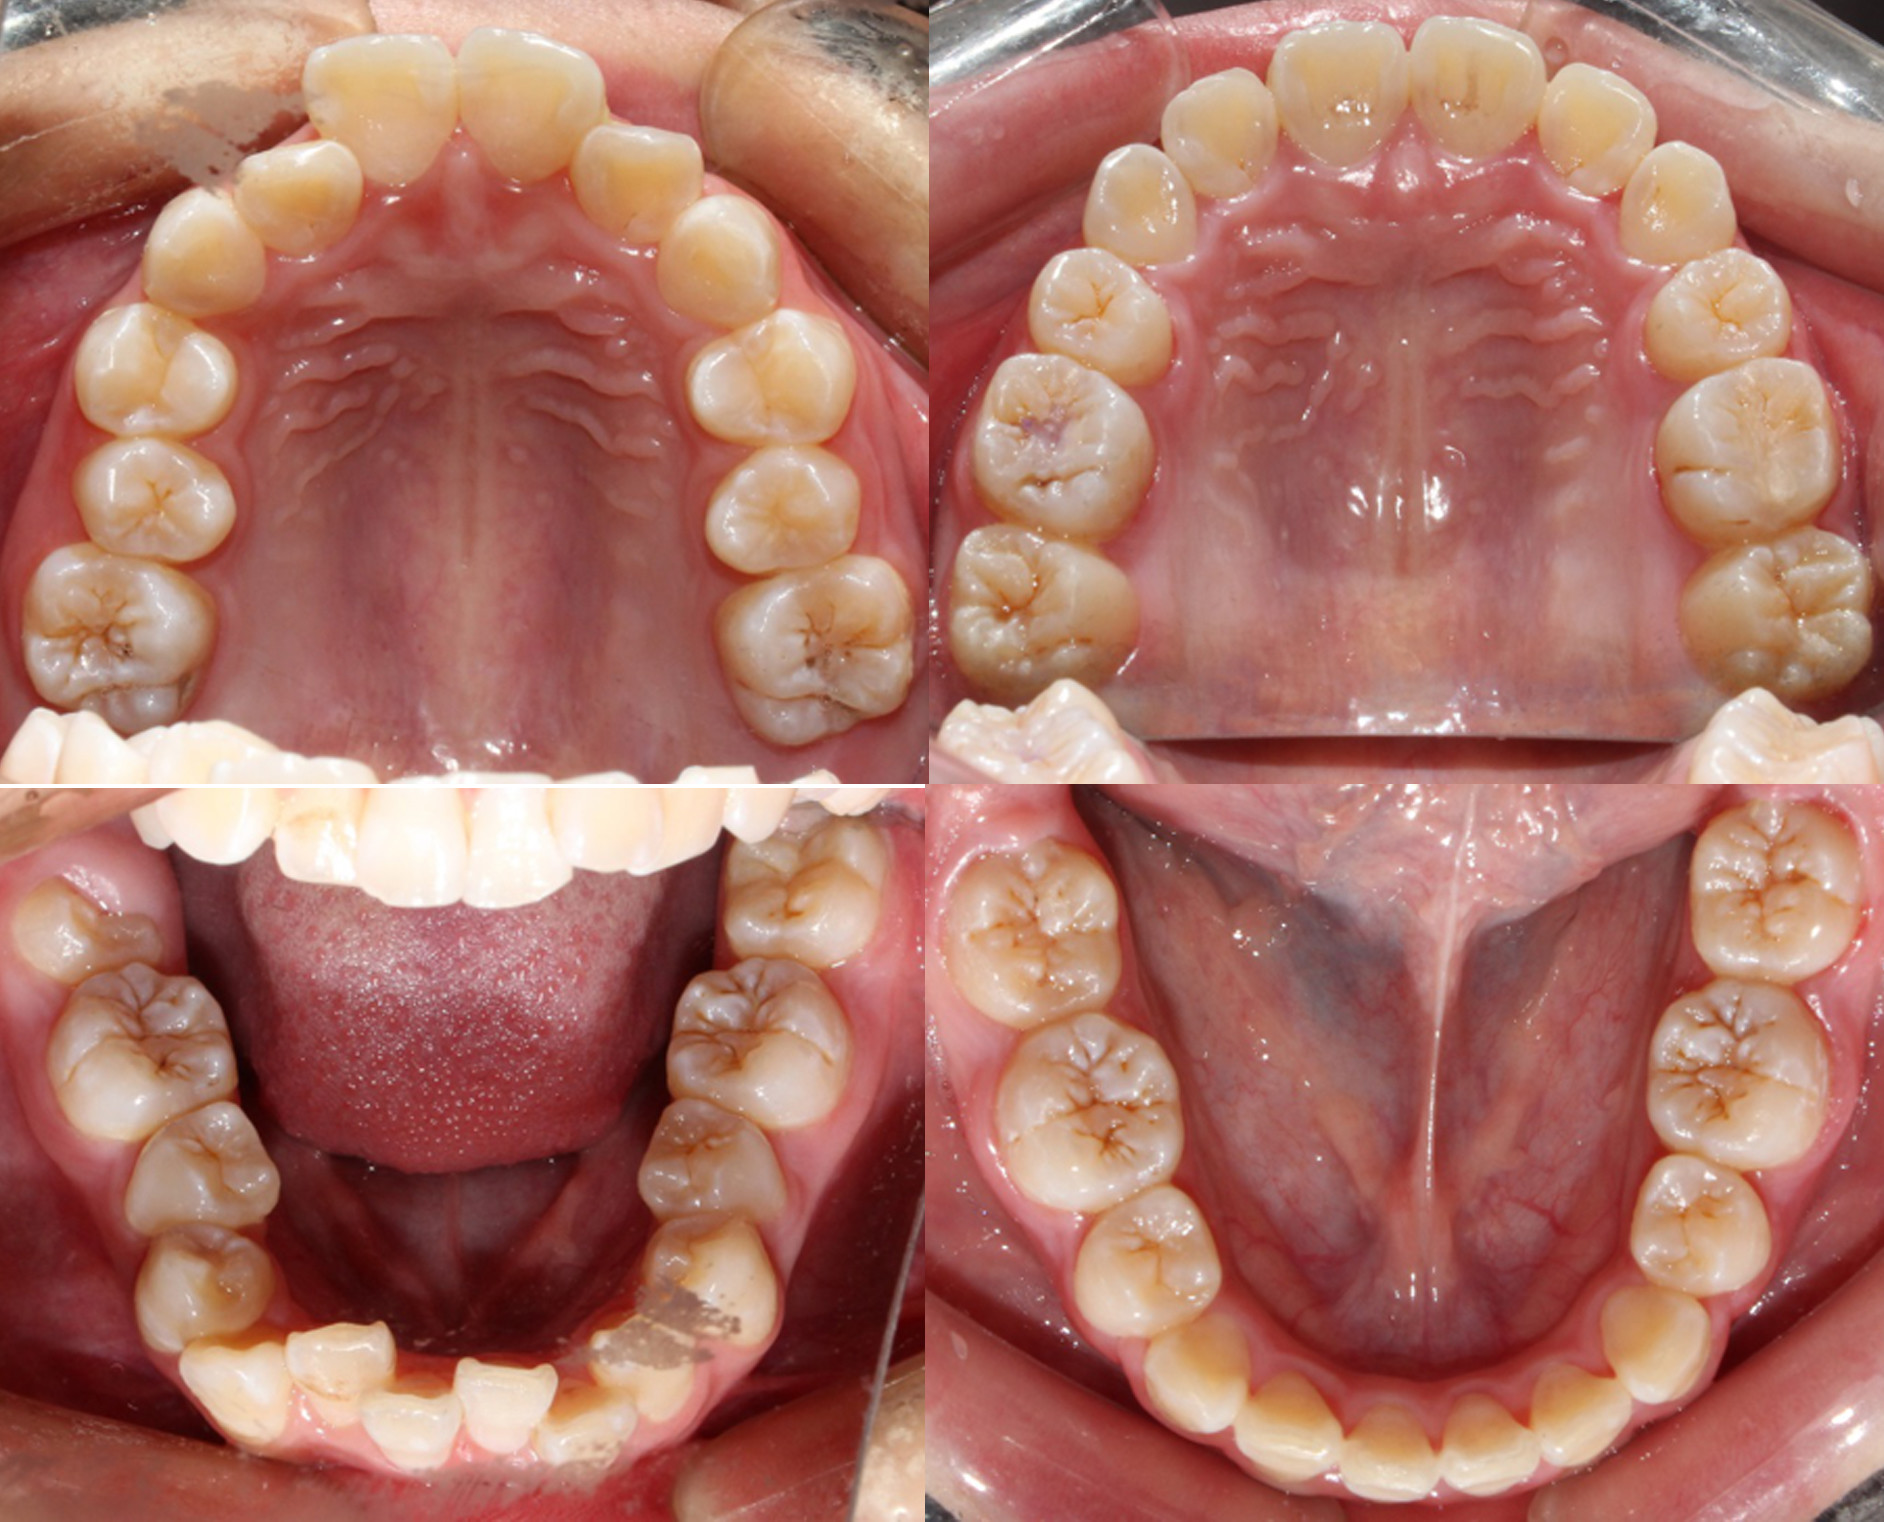 上排术前:牙齿拥挤,后牙咬合关系不佳 矫治通过减数4颗双尖牙,解除牙